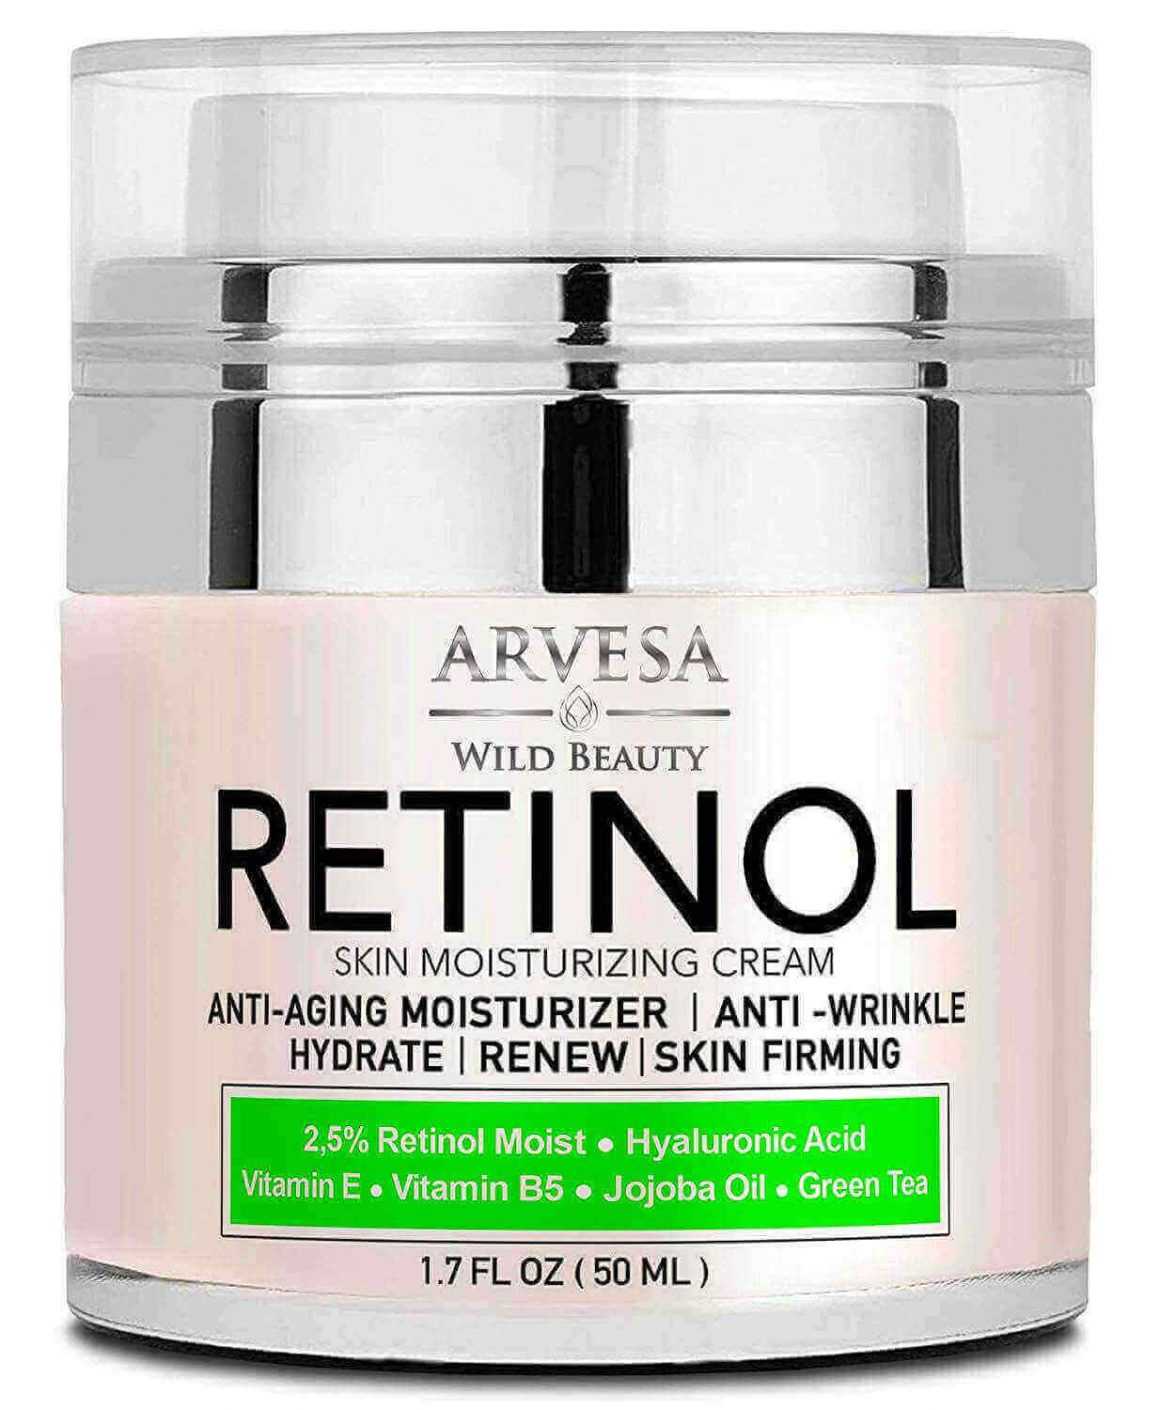 Avon retinol cream